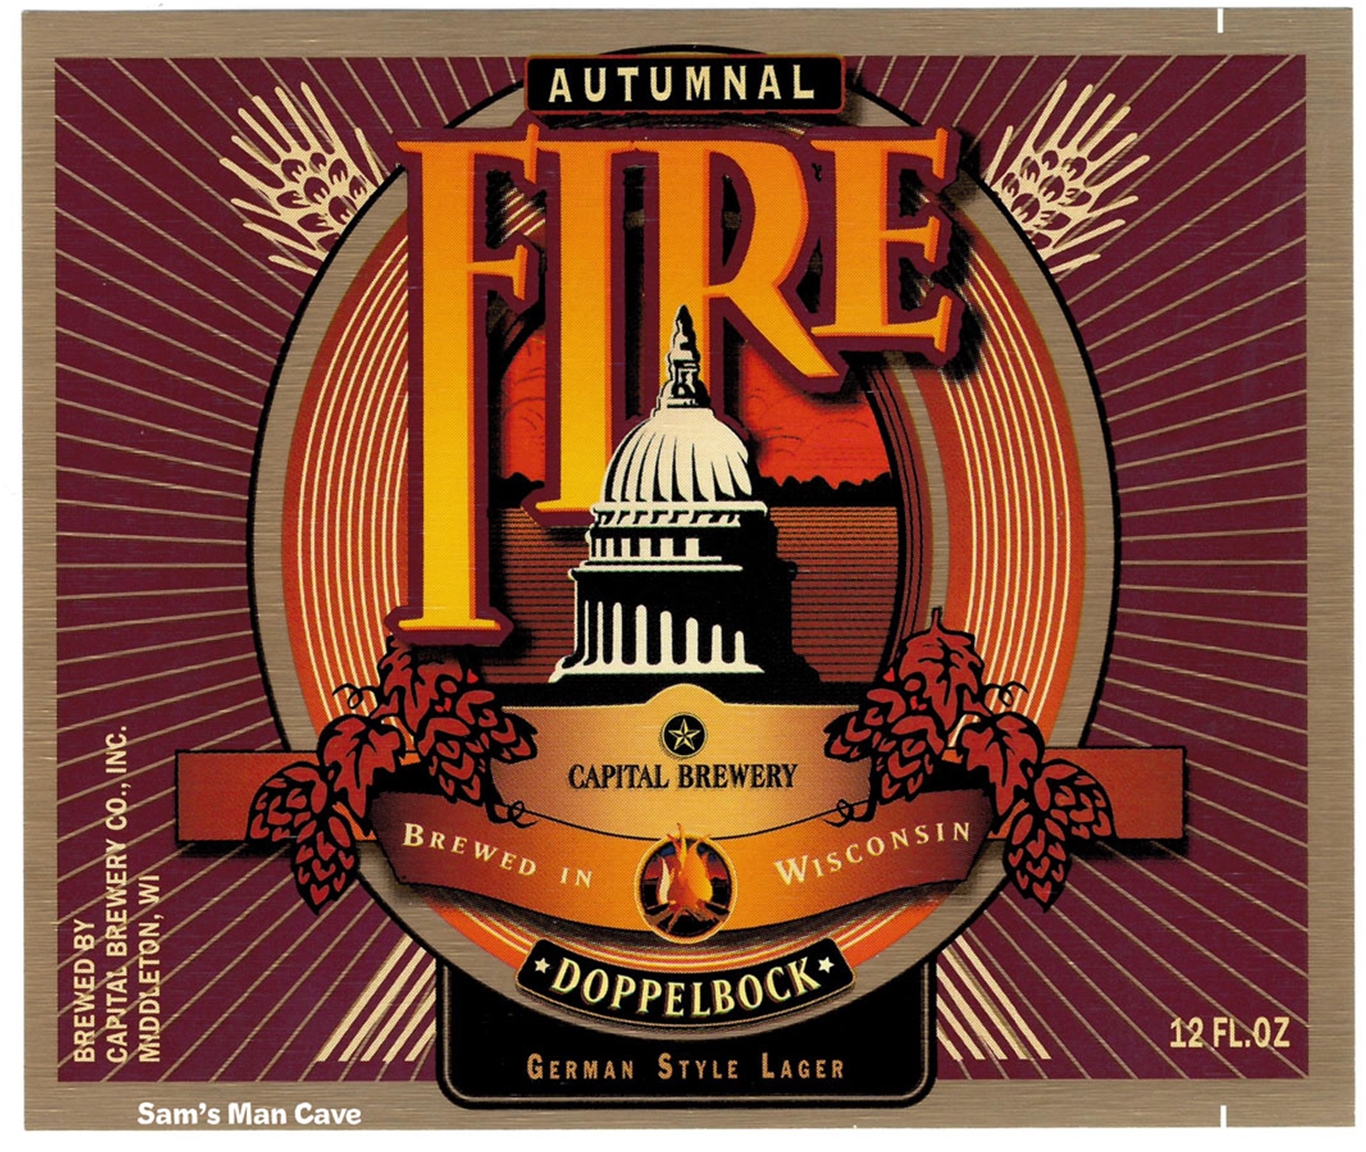 Capital Brewery Fire Doppelbock Beer Label